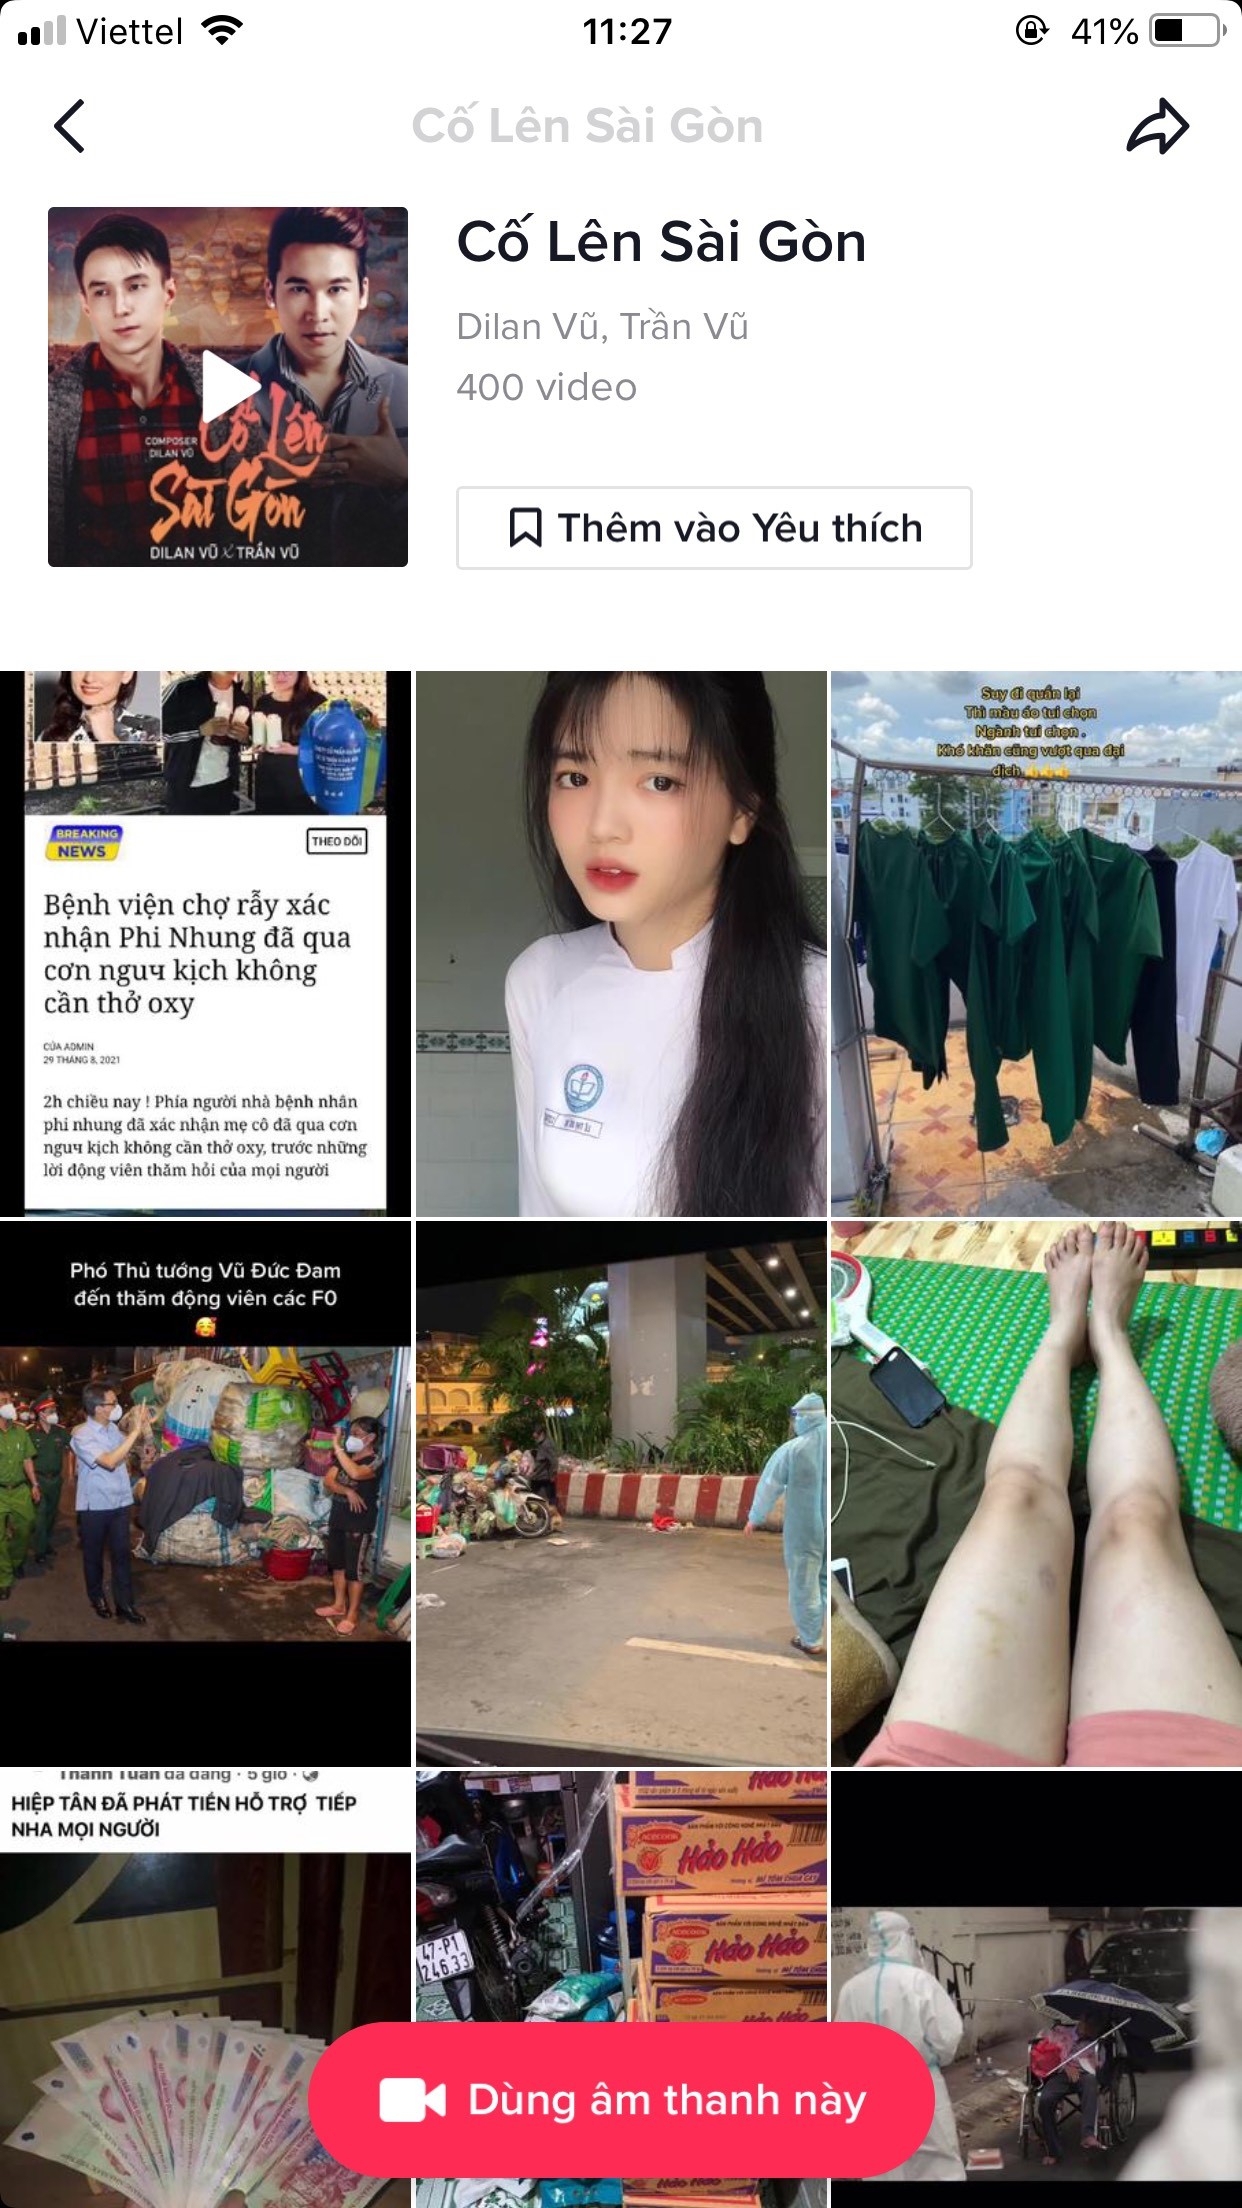 co len sai gon 6 Dilan Vũ và Trần Vũ lên top 1 nghệ sĩ trending với Cố lên Sài Gòn